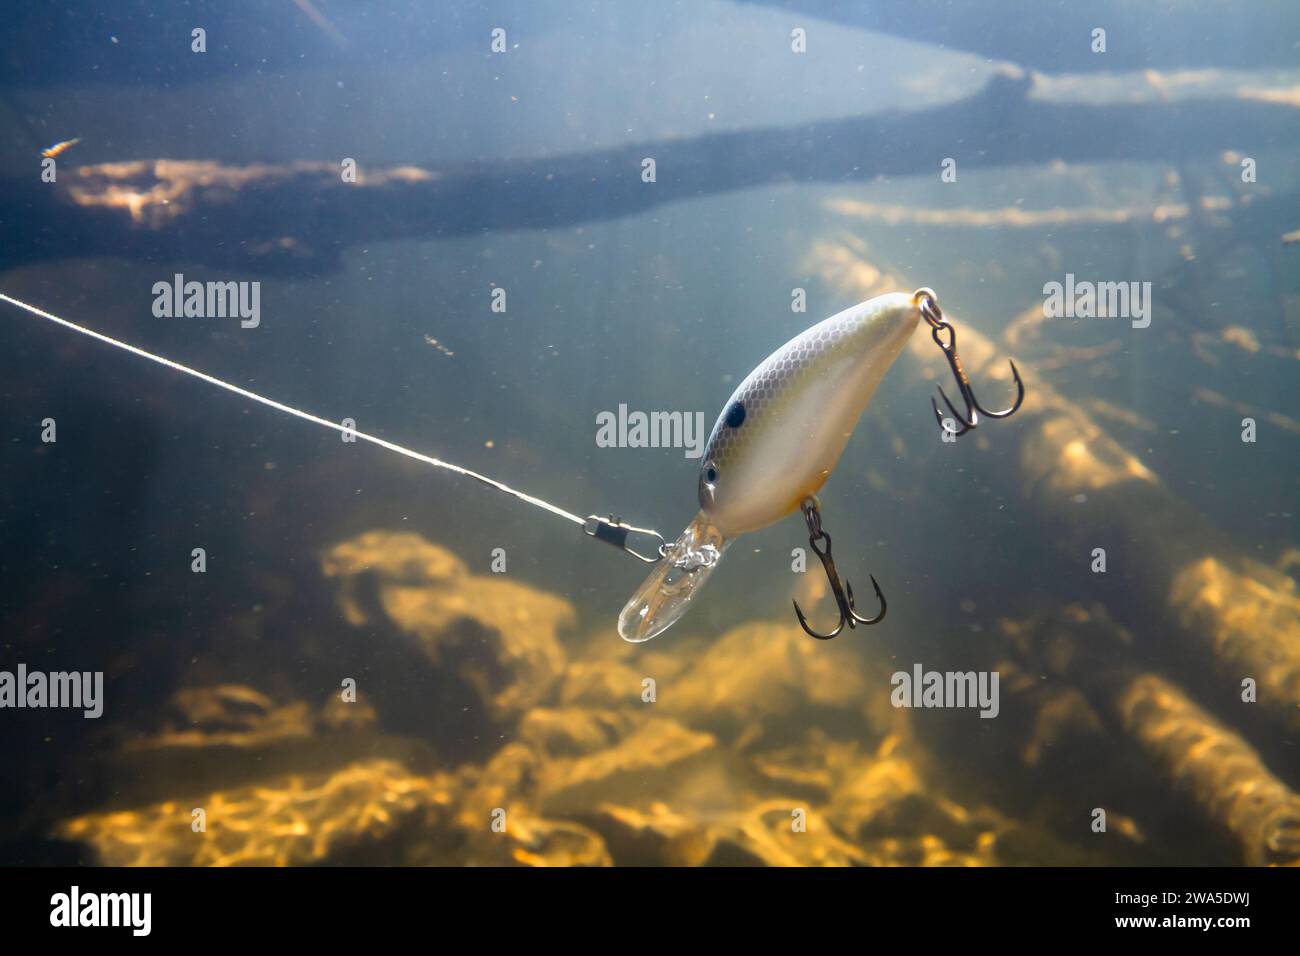 Ein dicker Wobbler schwimmt unter dem Wasser vorbei an vielen Snacks beim Angeln. Es simuliert die Beutefische. Sonnenlicht dringt durch die Wassersäule und ein Stockfoto